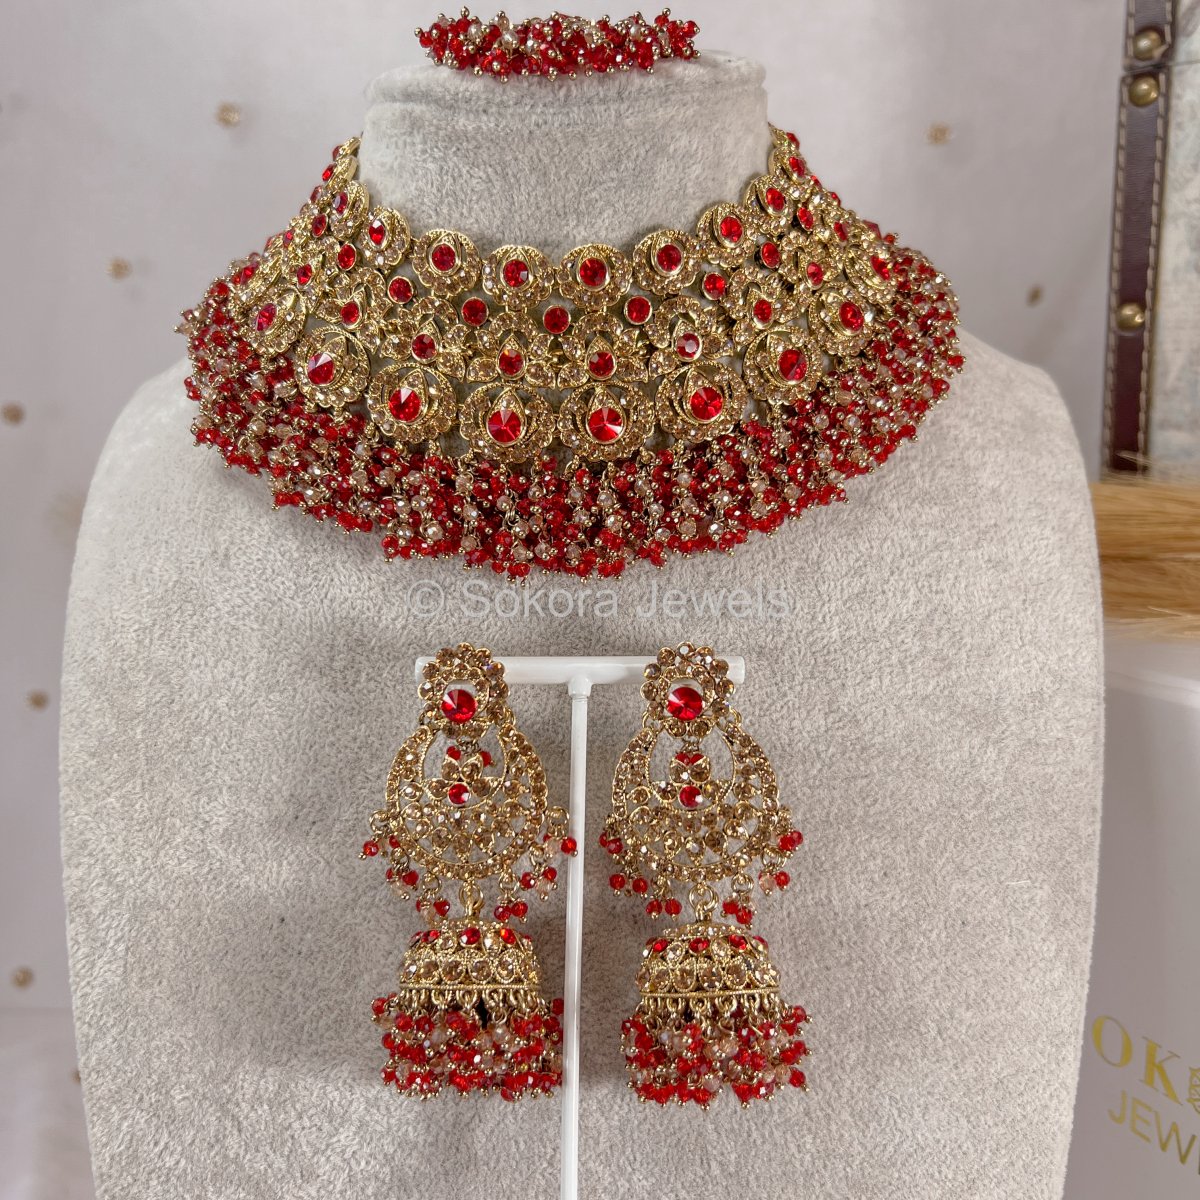 Amulya Necklace set - Red - SOKORA JEWELSAmulya Necklace set - Red